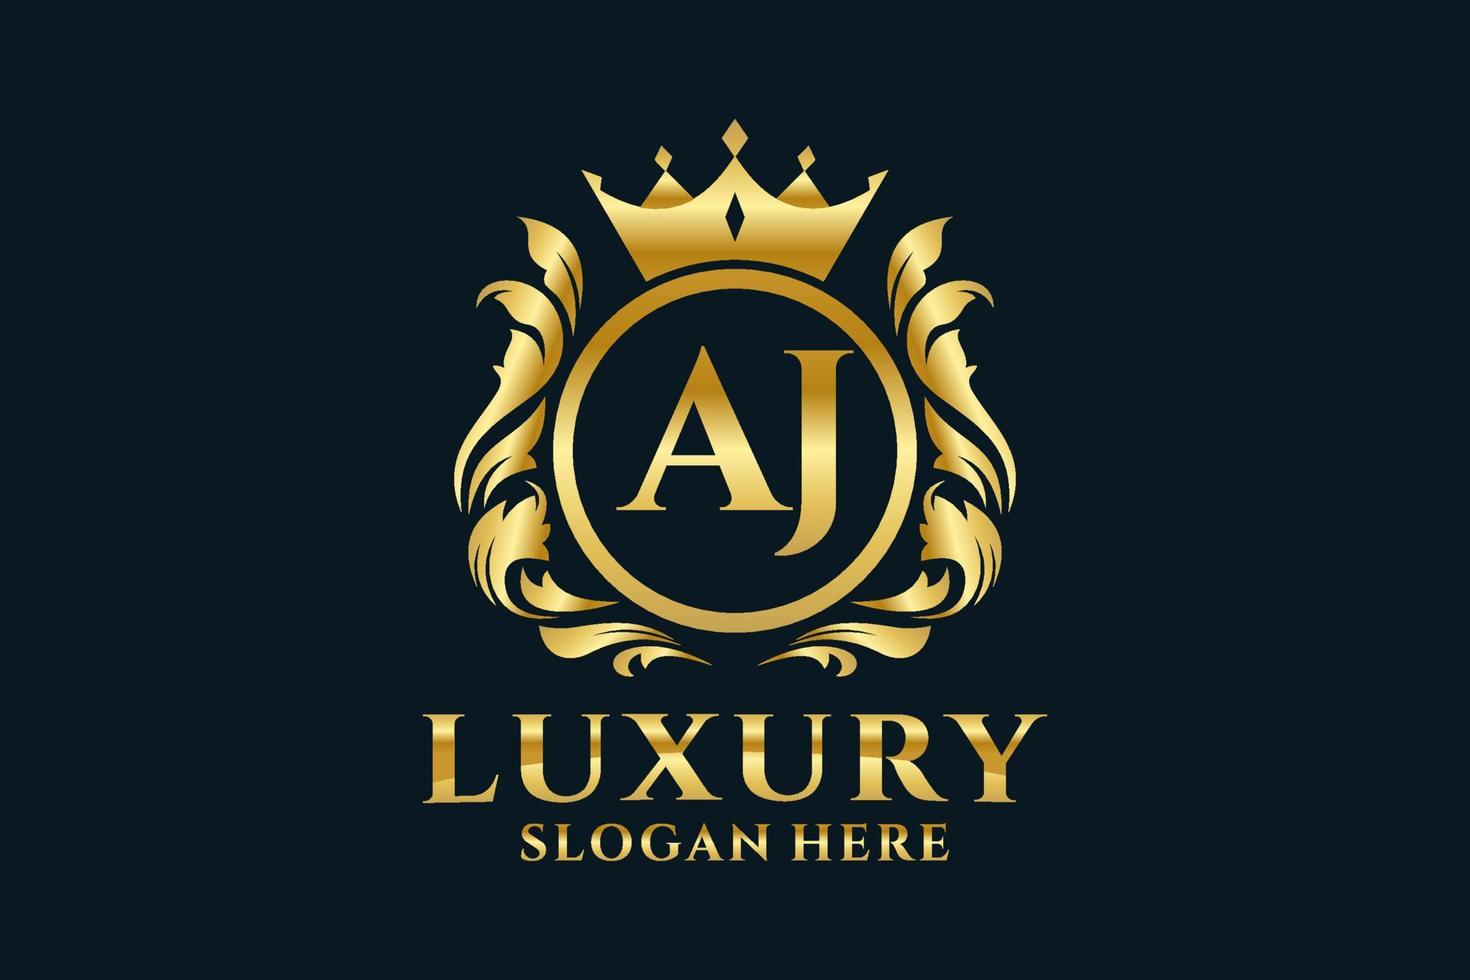 königliche Luxus-Logo-Vorlage mit anfänglichem aj-Buchstaben in Vektorgrafiken für luxuriöse Branding-Projekte und andere Vektorillustrationen. vektor